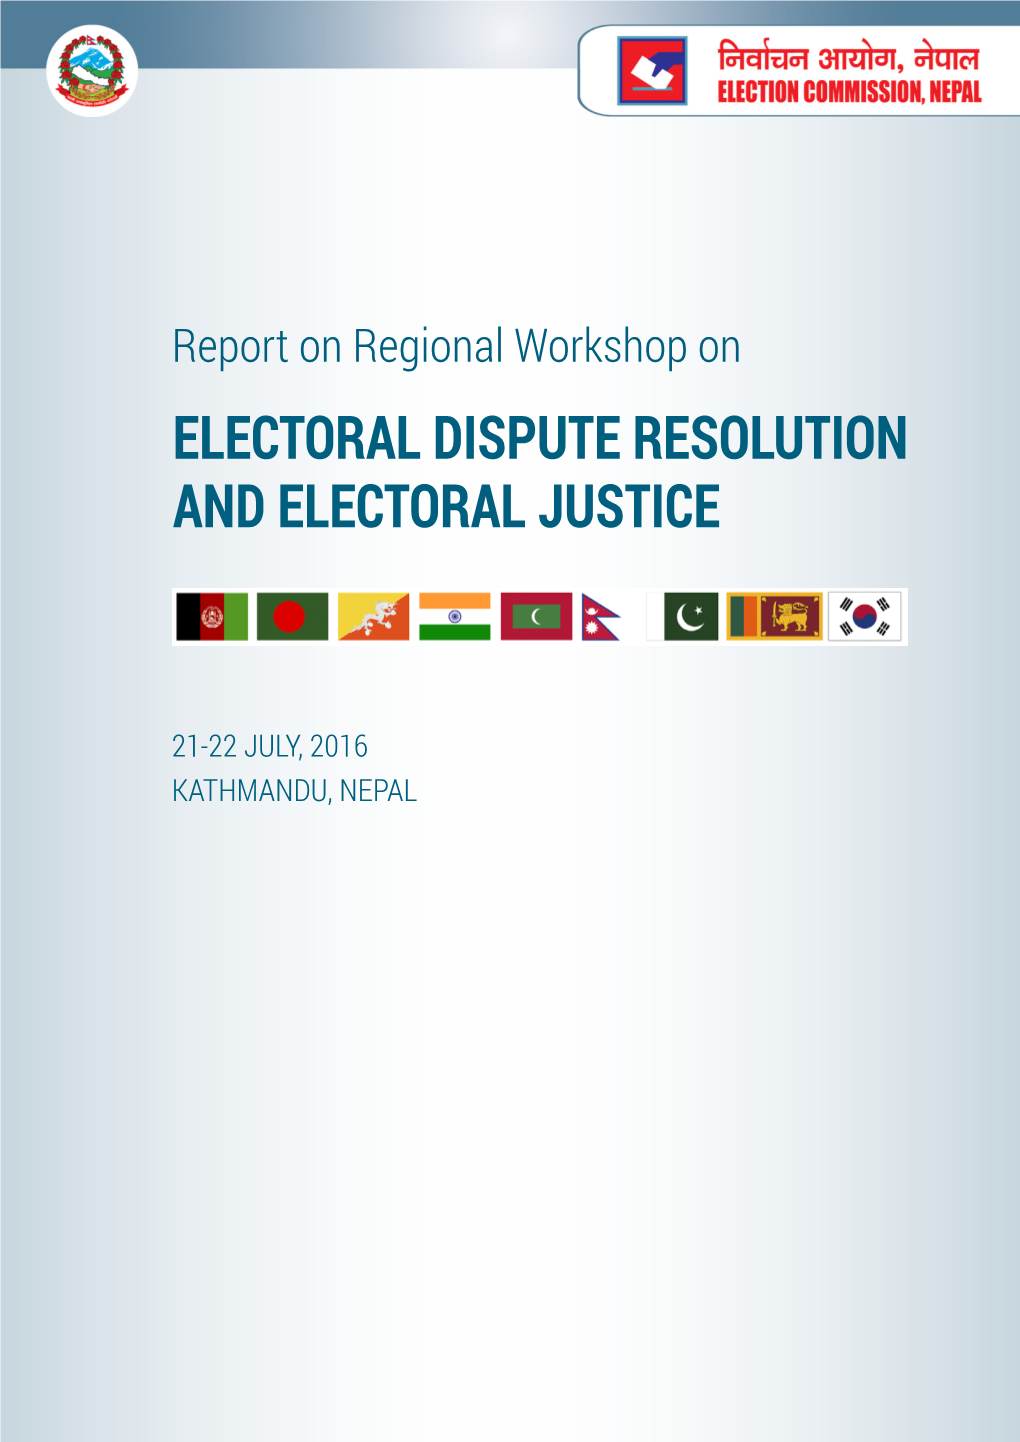 Electoral Dispute Resolution and Electoral Justice